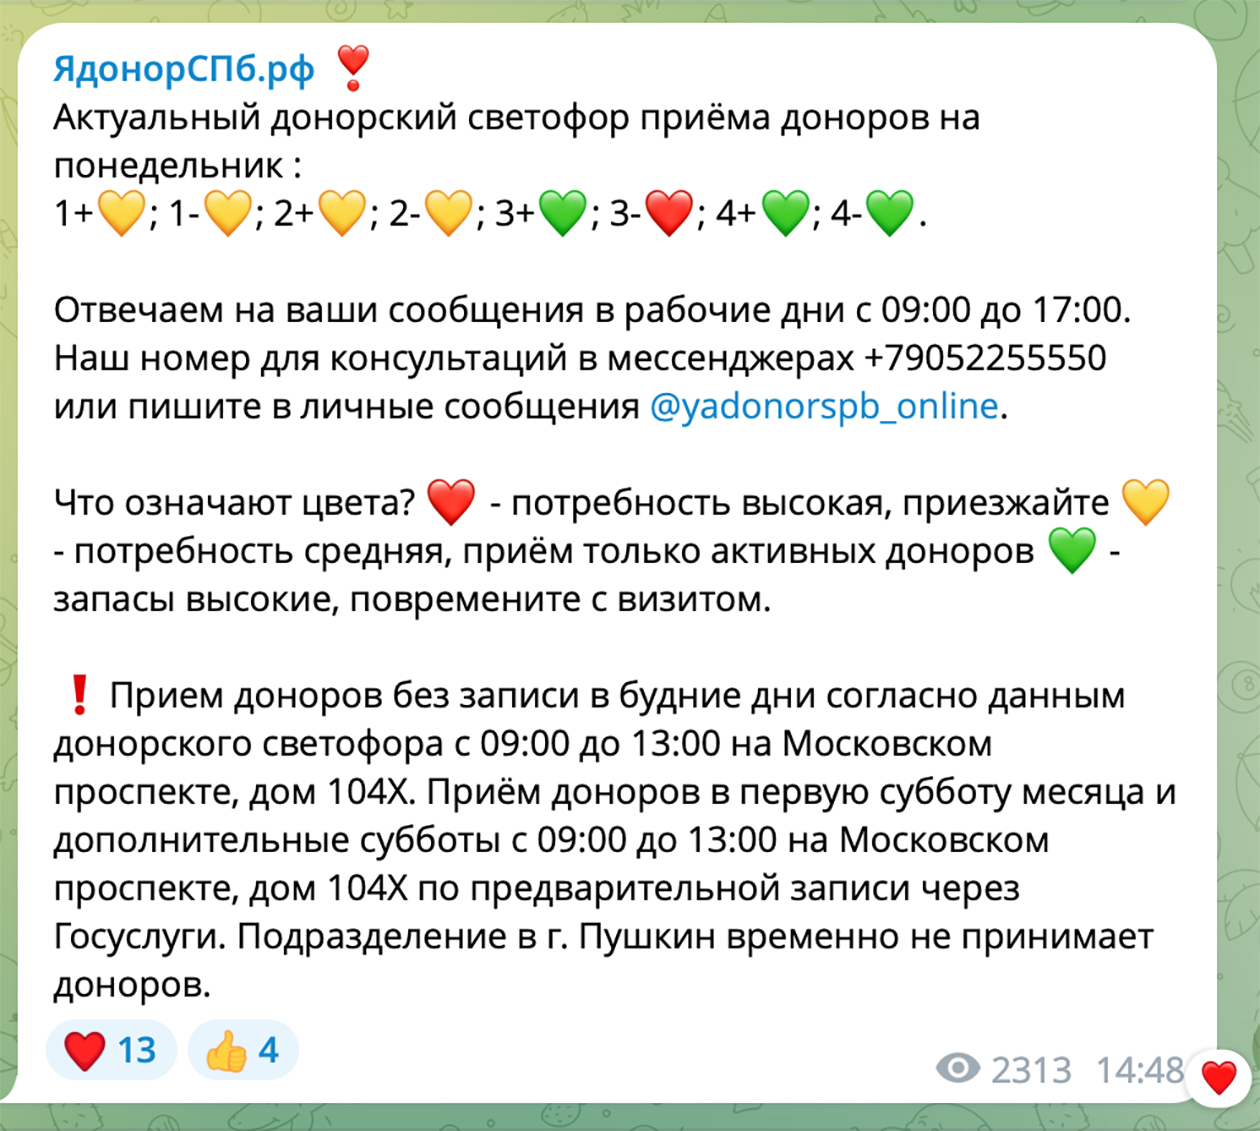 Так выглядит «донорский светофор» в телеграм-канале Городской станции переливания крови в Санкт-Петербурге